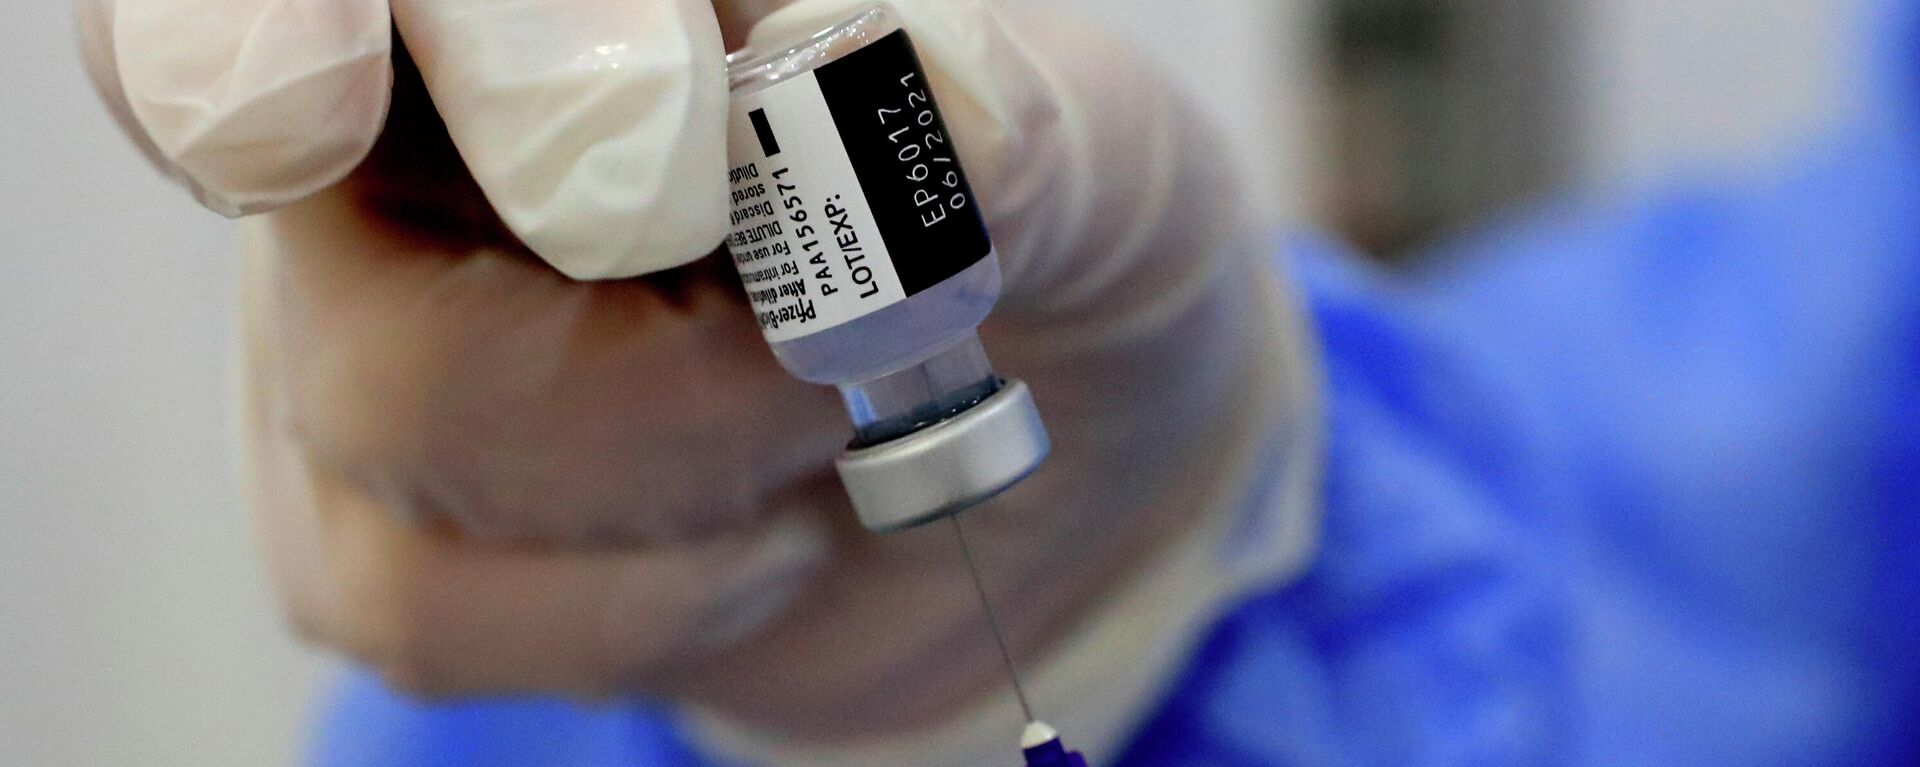 Una enfermera prepara una jeringa de la vacuna contra el coronavirus de Pfizer-BioNTech COVID-19 durante una campaña de vacunación en Beirut, Líbano, 16 de febrero de 2021. - Sputnik Mundo, 1920, 12.12.2021